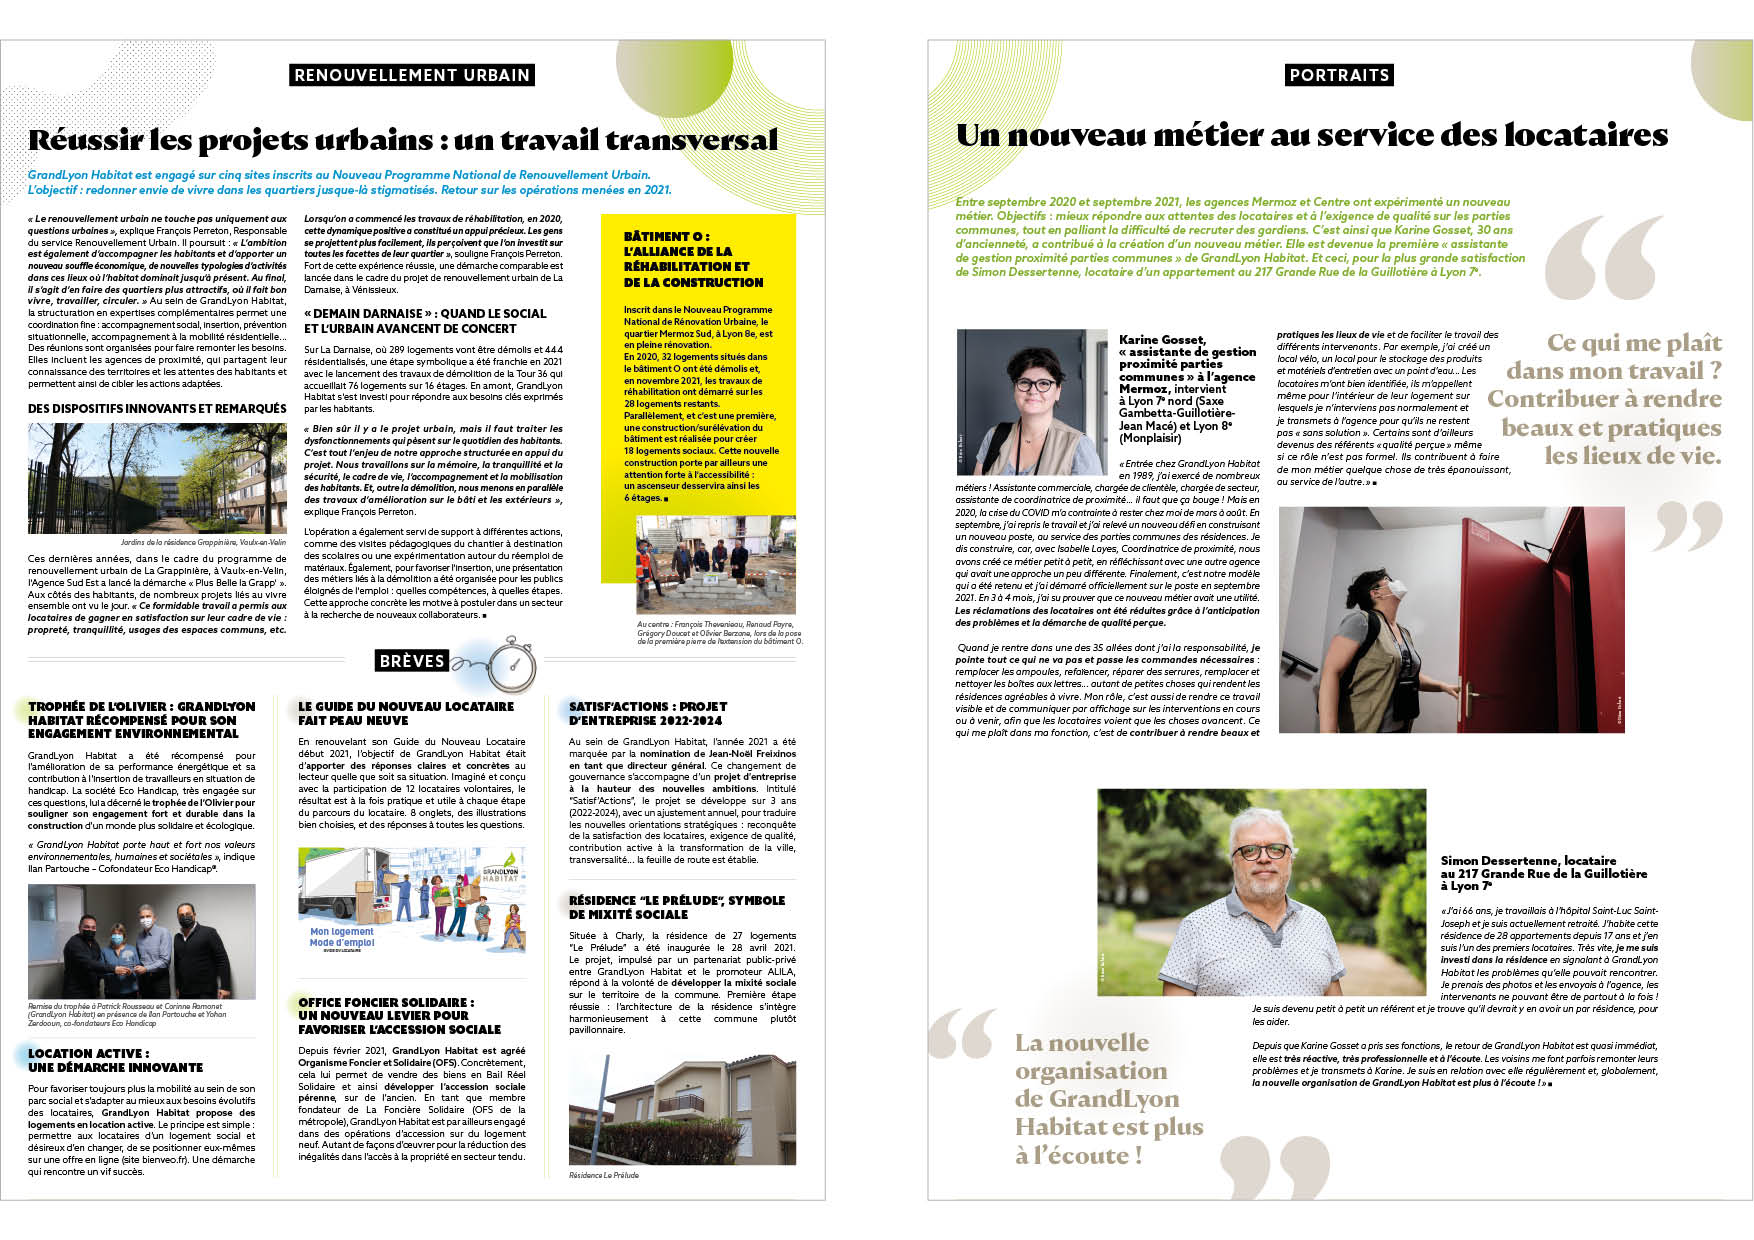 GrandLyon Habitat - Rapport d’activité - Résonance Publique - Corporate - communication - design - journal - mise en page - graphisme